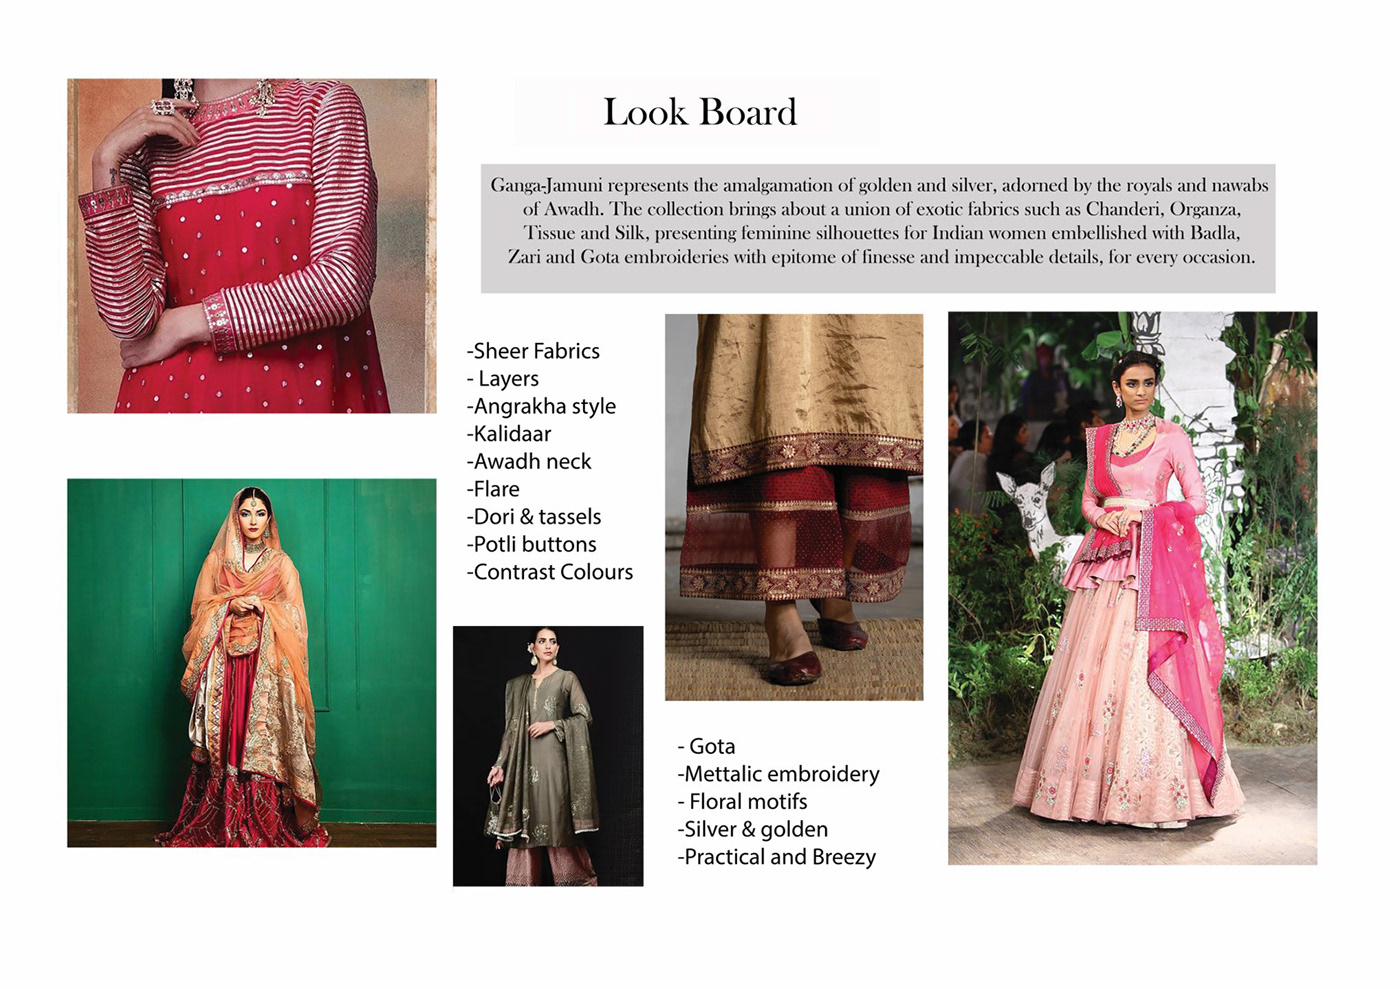 Fashion  fashion design Clothing apparel design fashion illustration womenswear runway fashion indianwear indian wedding